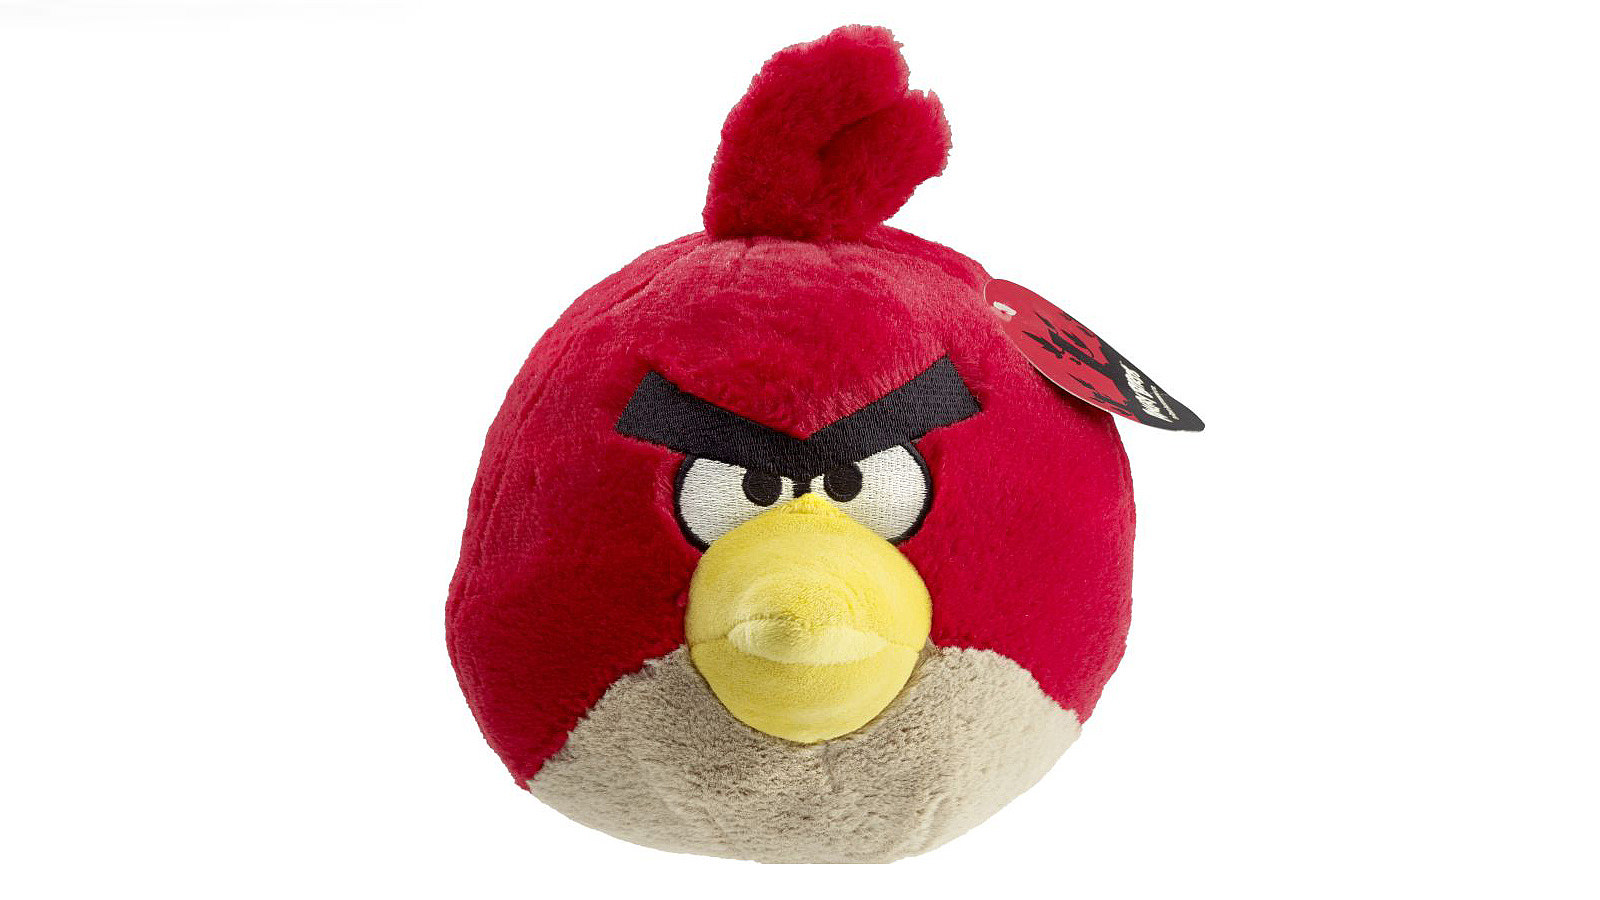 Stuffed animal: Angry Bird, 2014